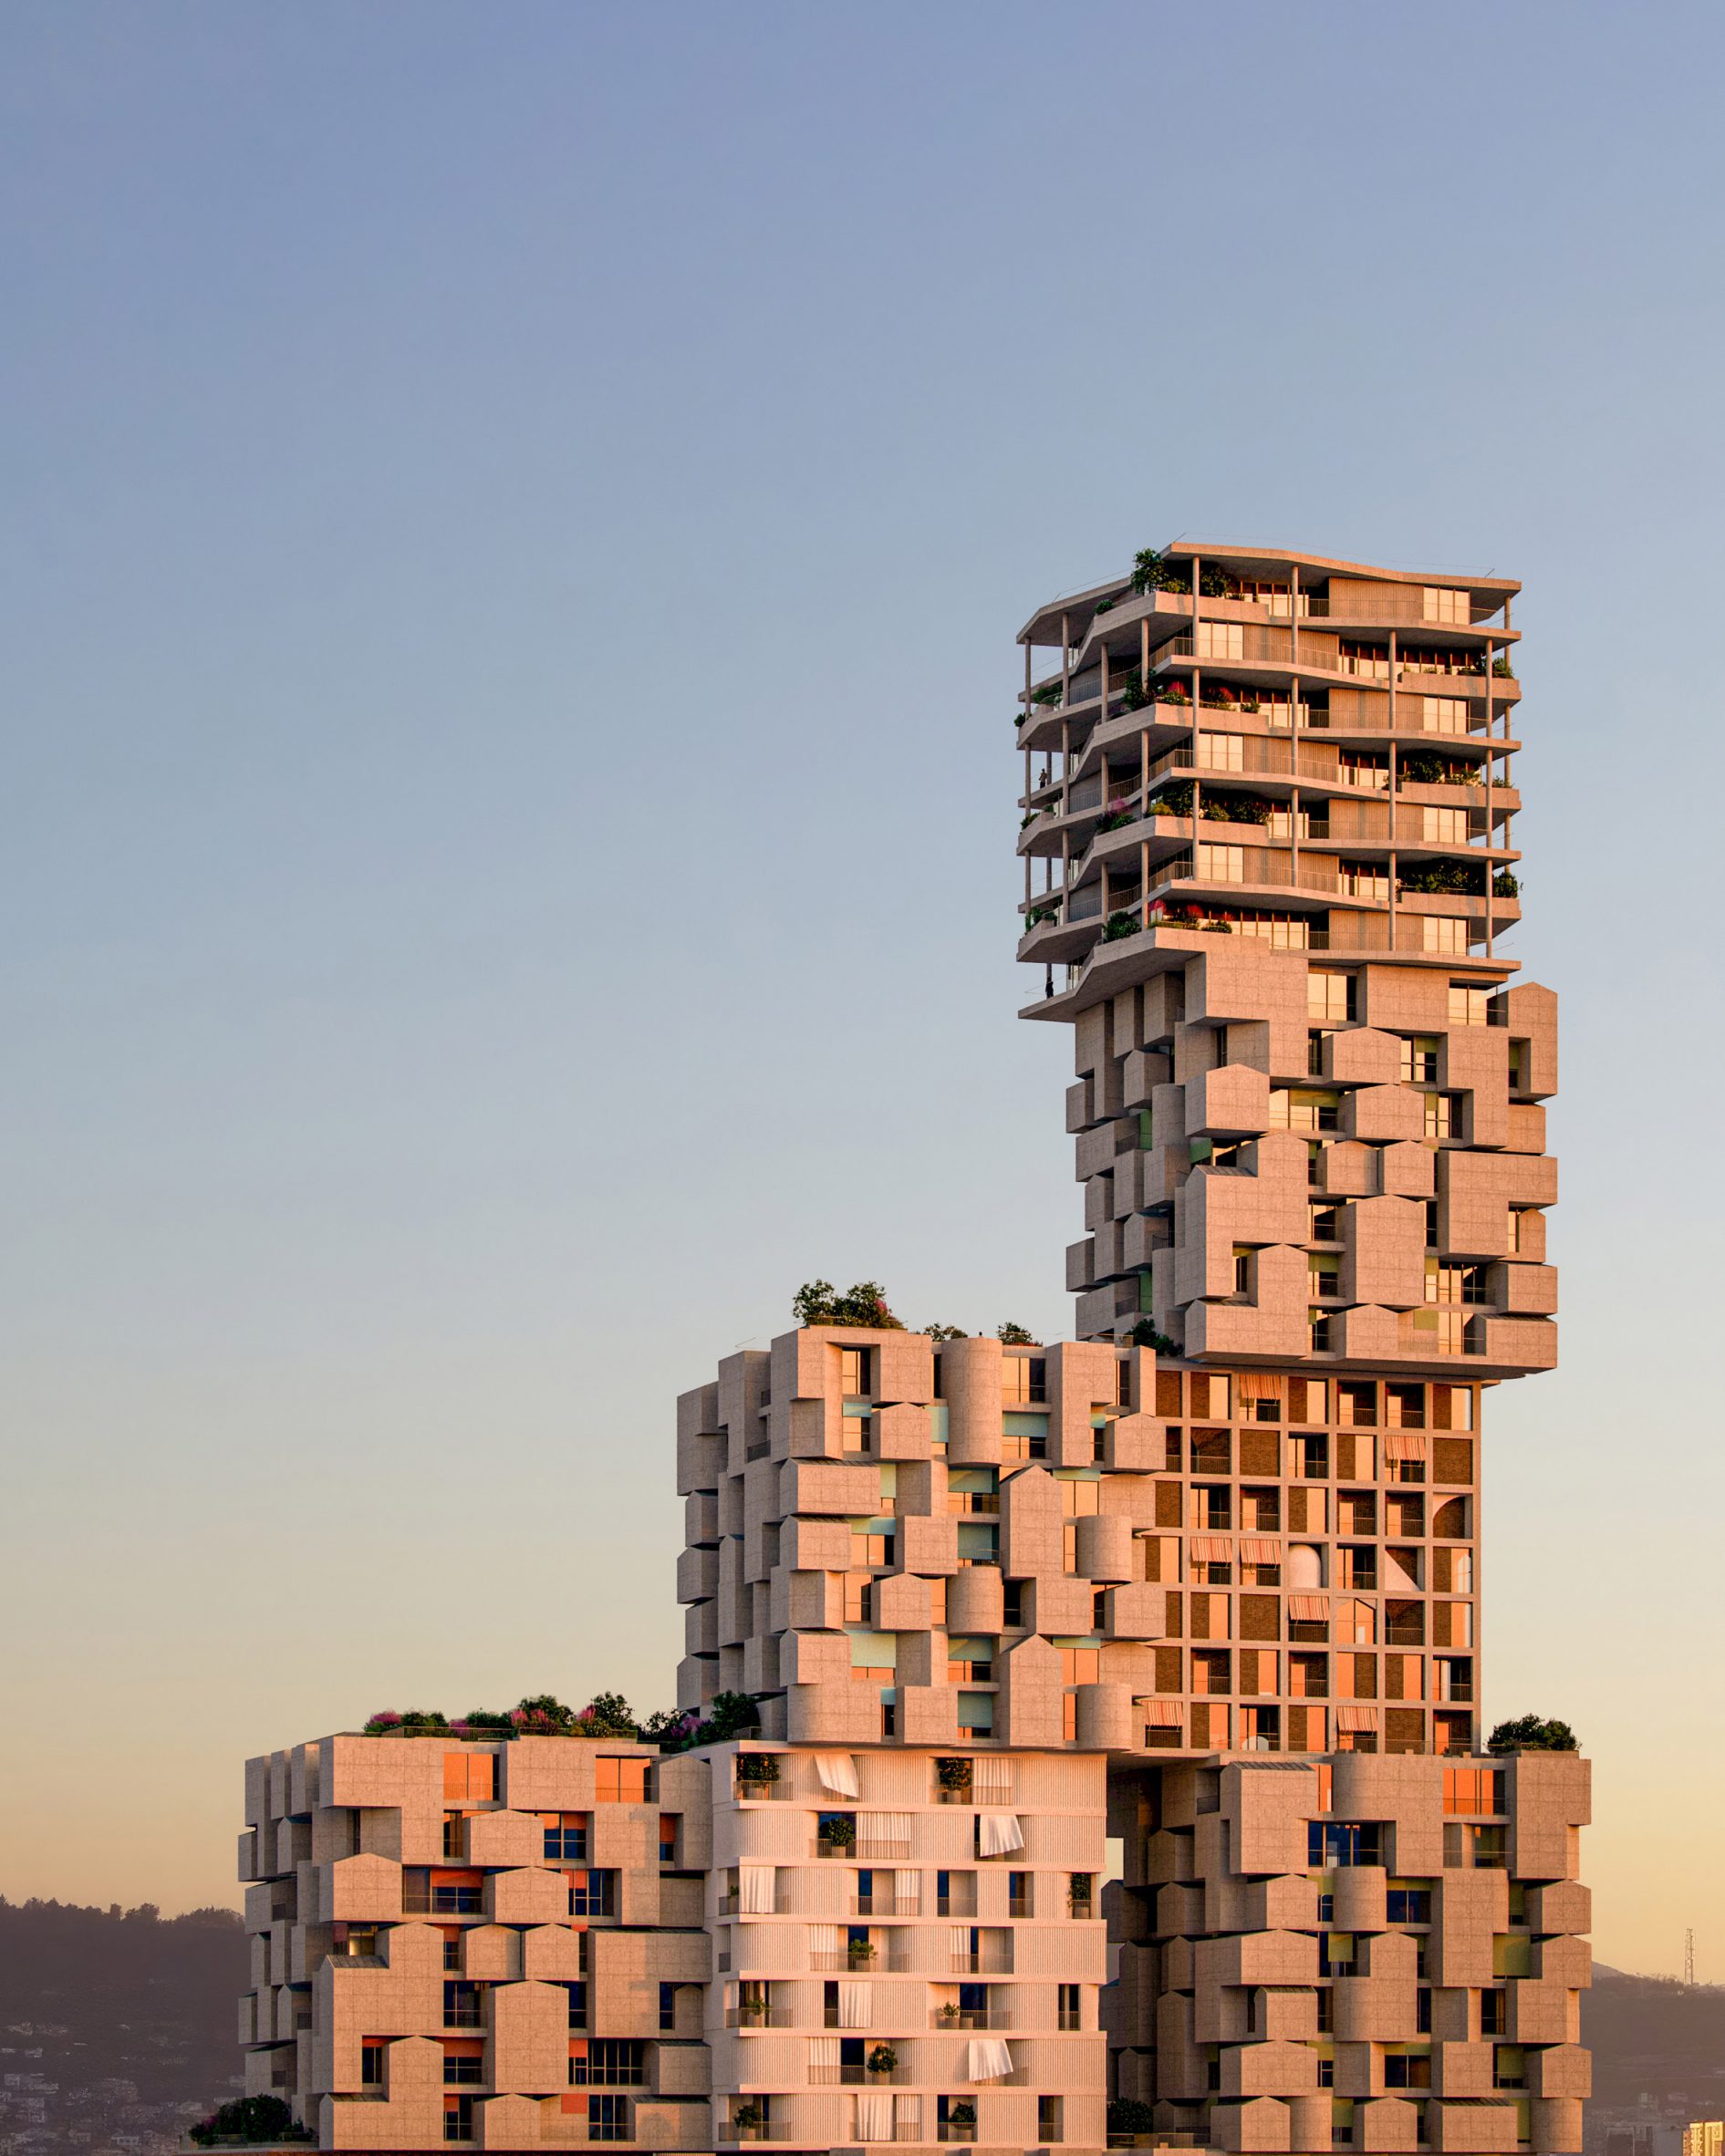 OODA designs staggered skyscraper in Tirana as unique vertical village